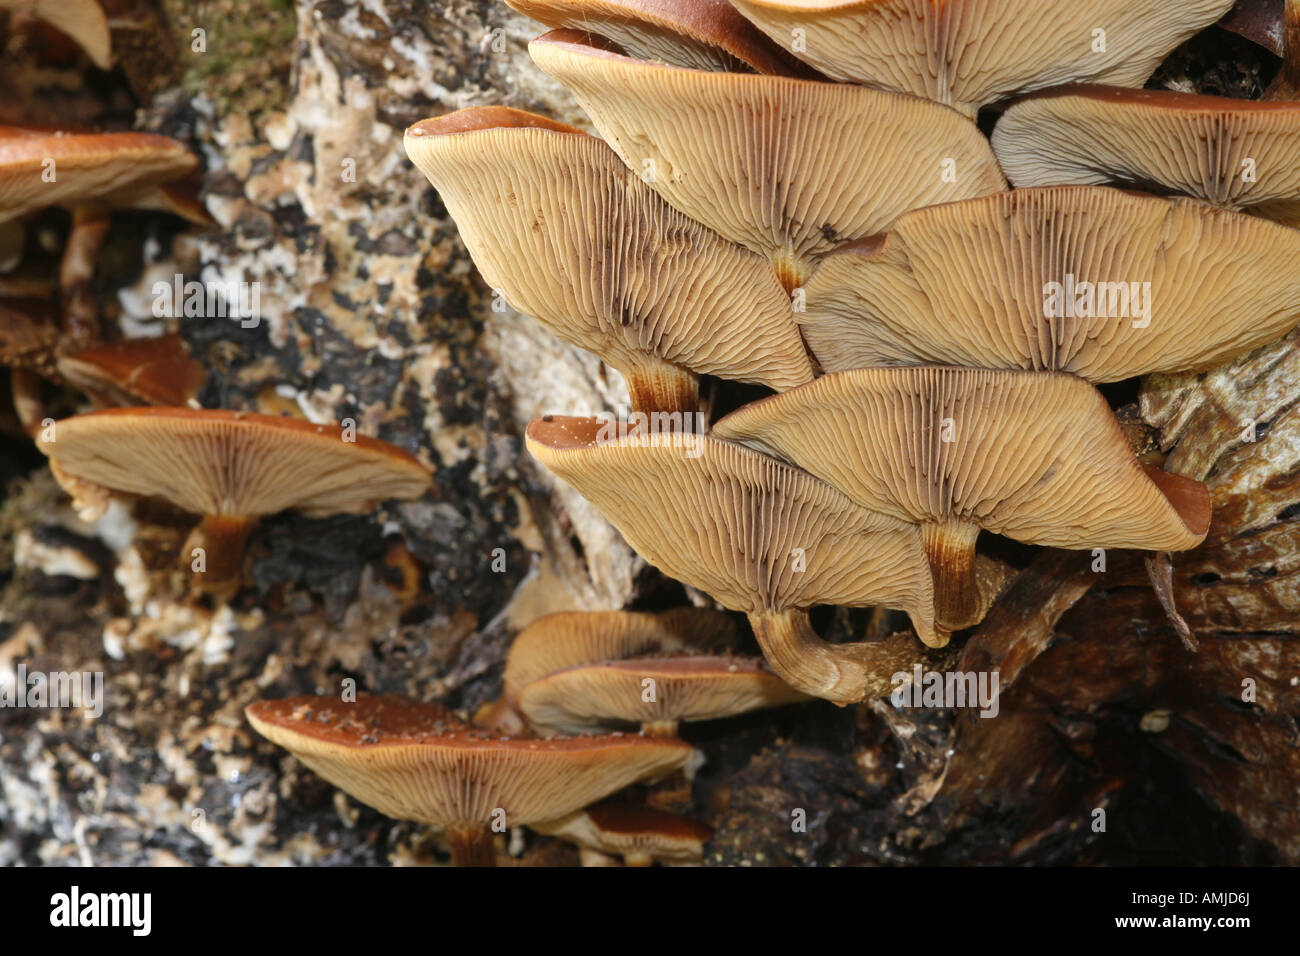 Galerina Marginata (aka Galerina Autumnalis) giftige Pilz auch als die Beerdigung Bell, hier ihre Sporen freigeben bekannt, wächst an totem Holz Stockfoto